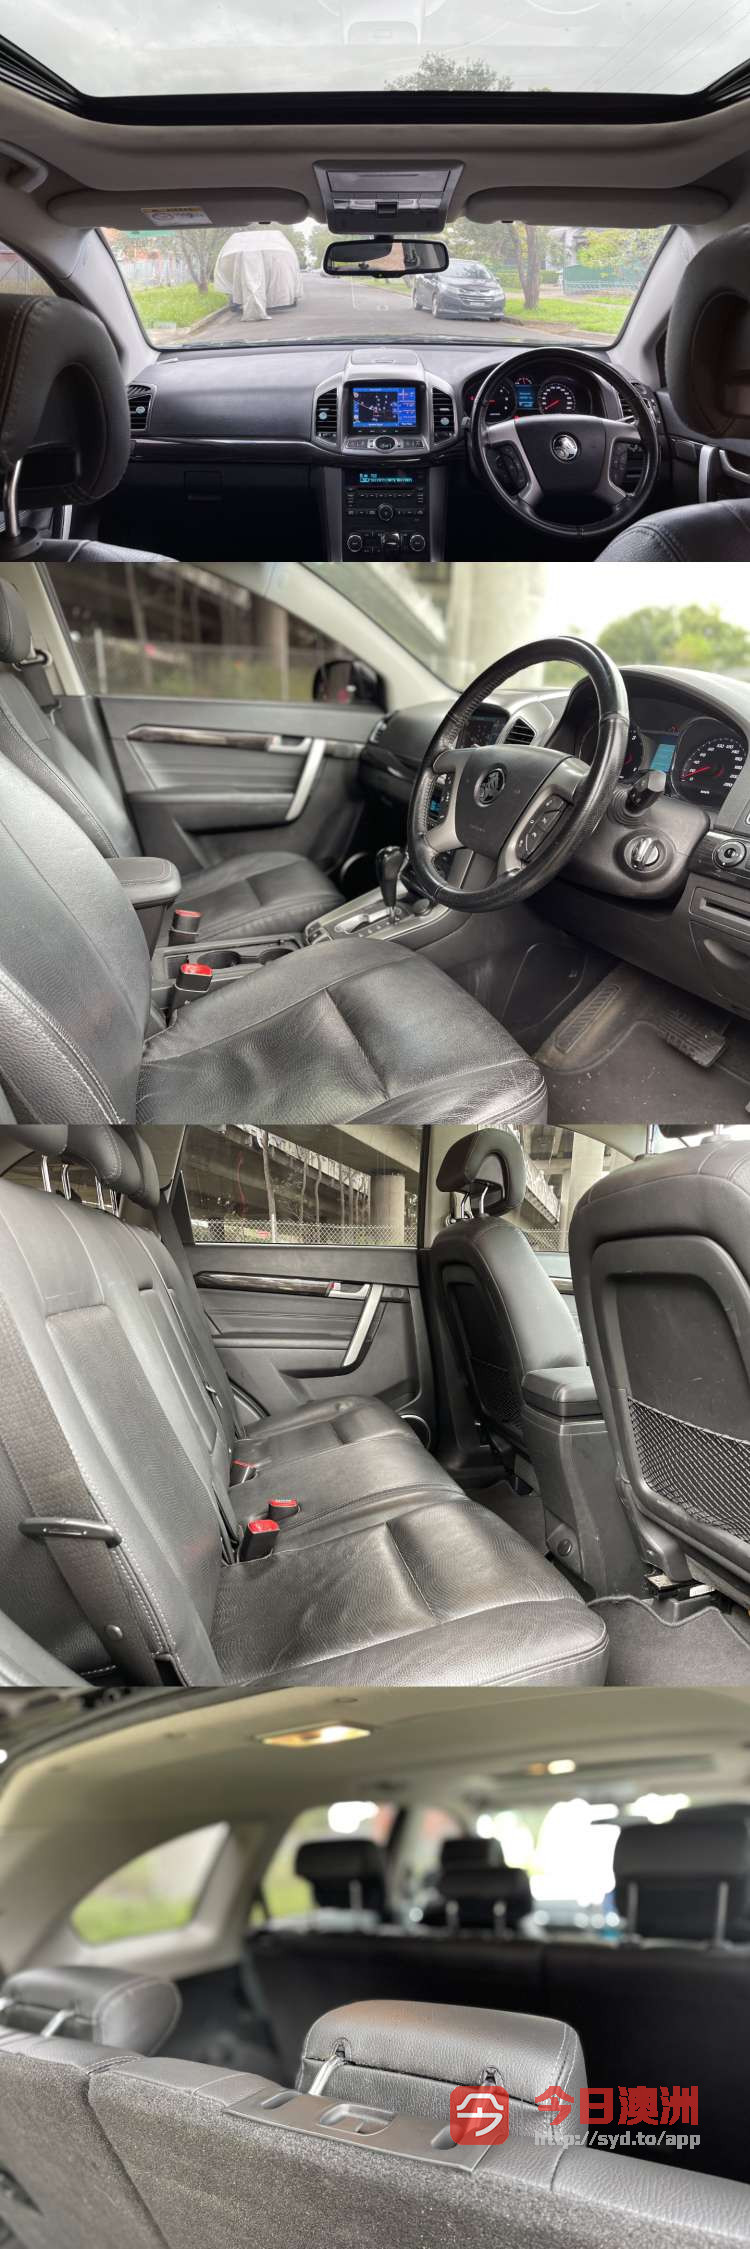 2014年 Holden Captiva 7LTZ 5门7座SUV 长路费 配置高 性价比高 欢迎预约看车